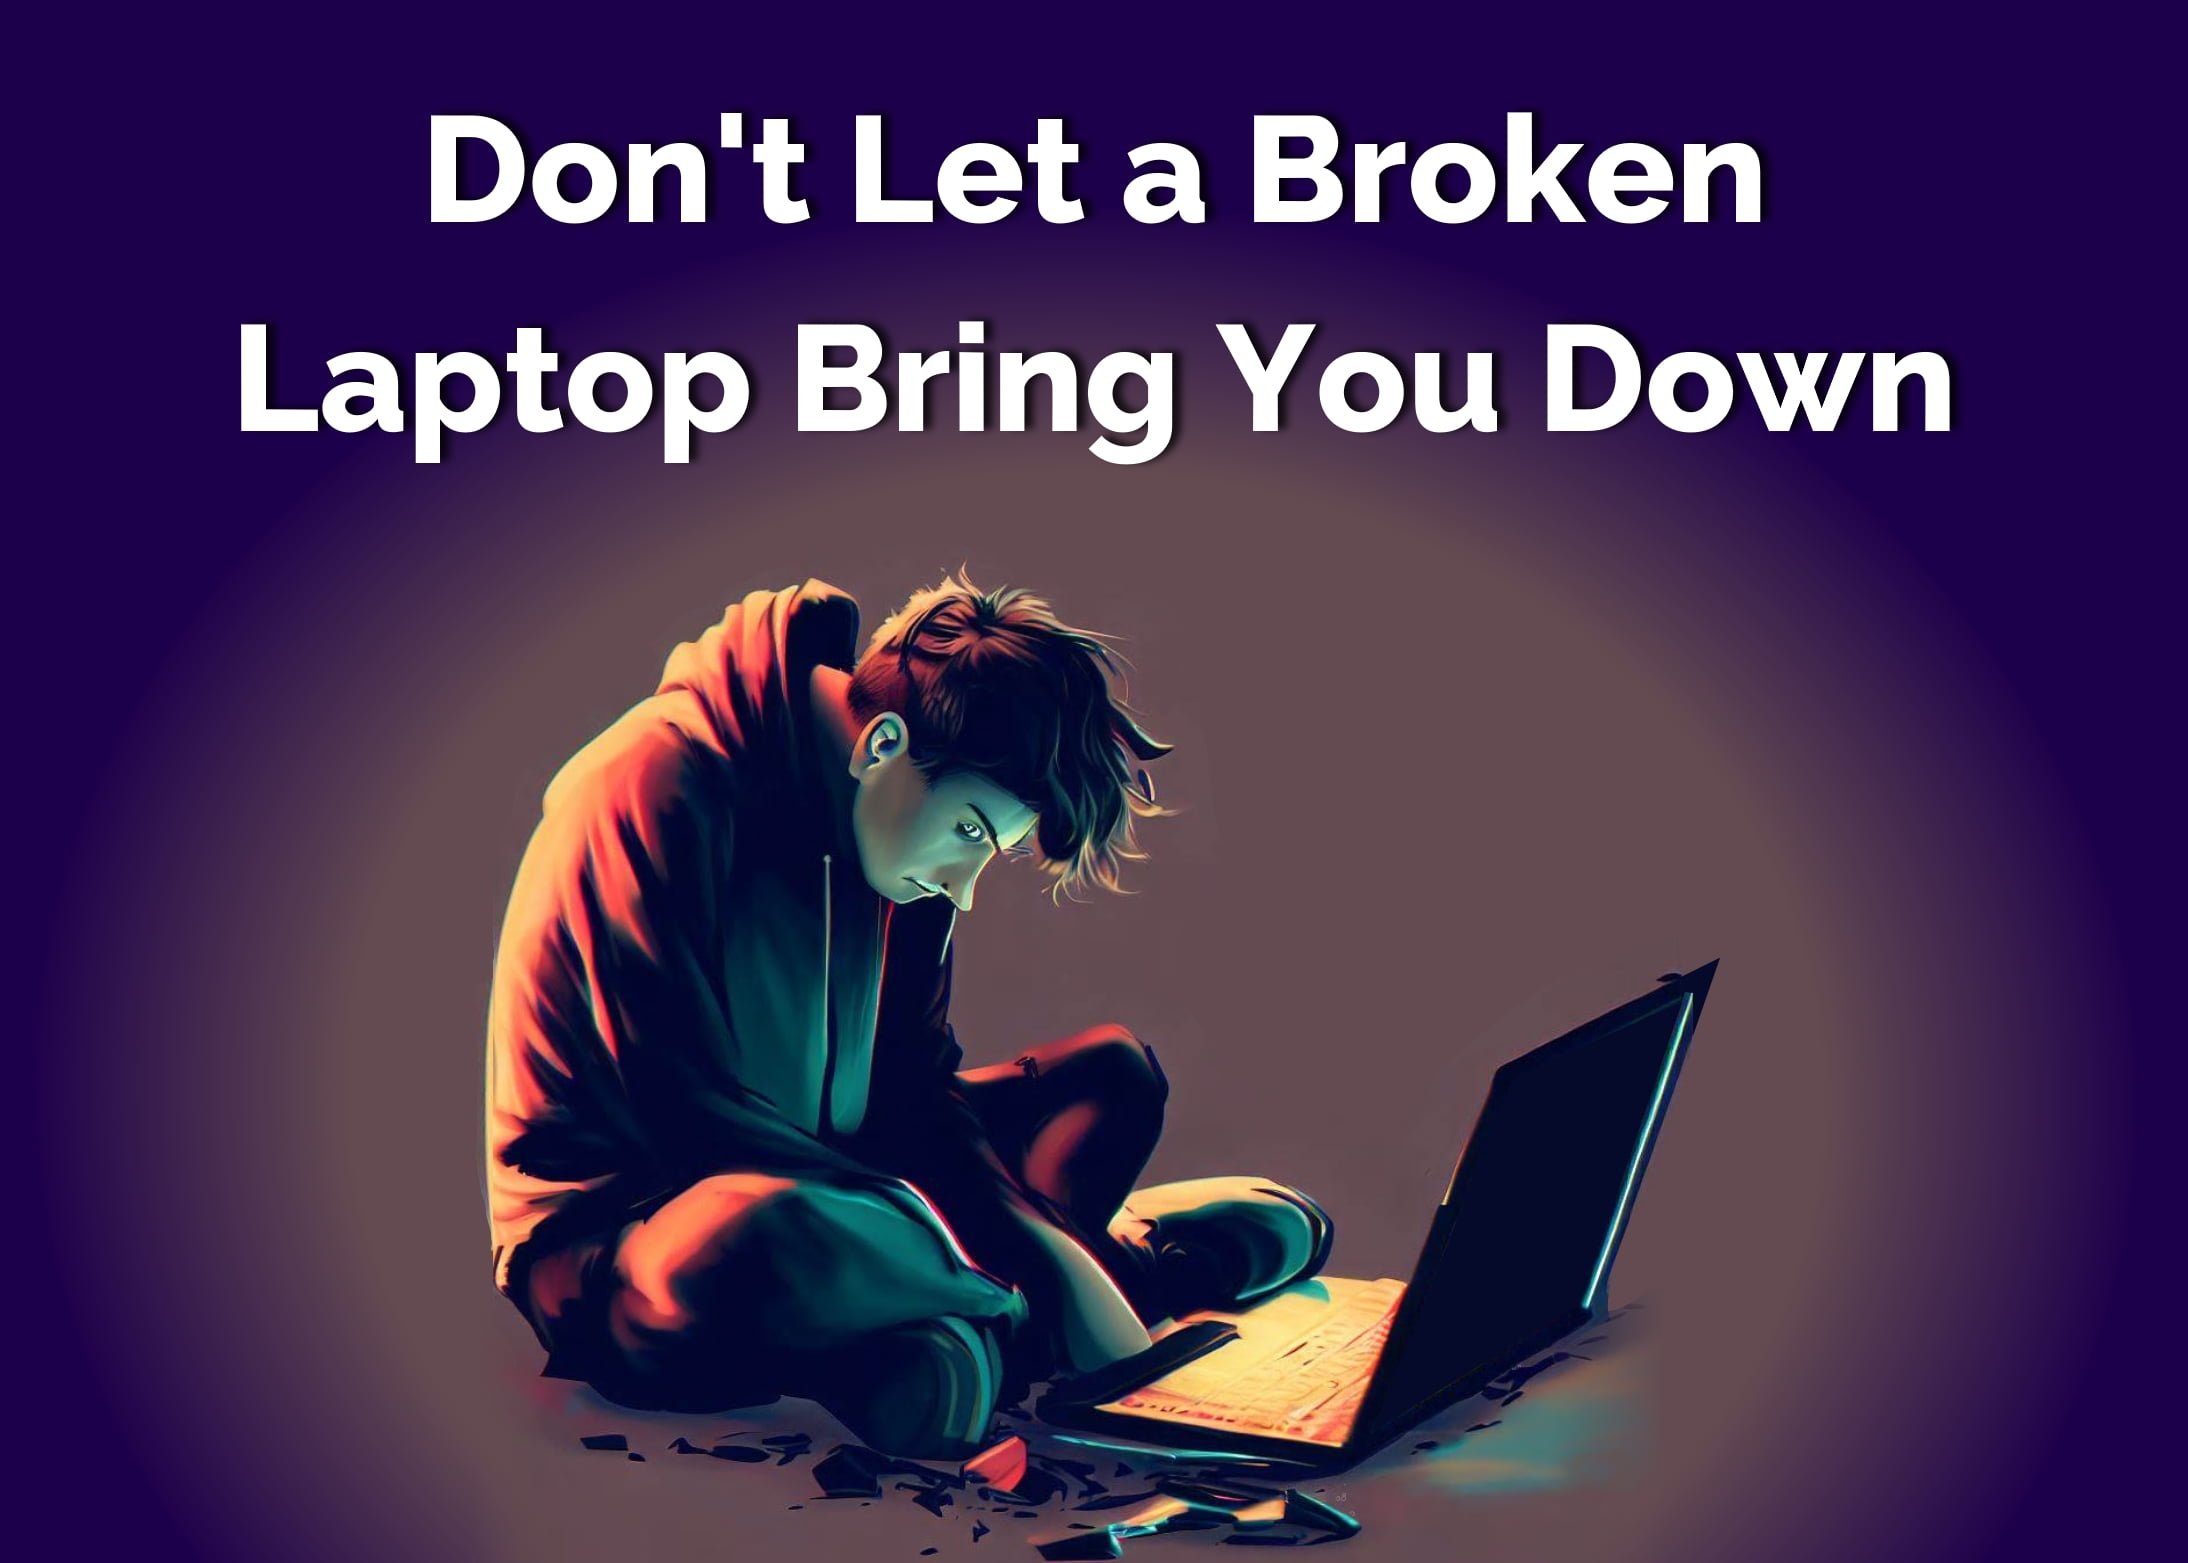 Broken laptop hinges